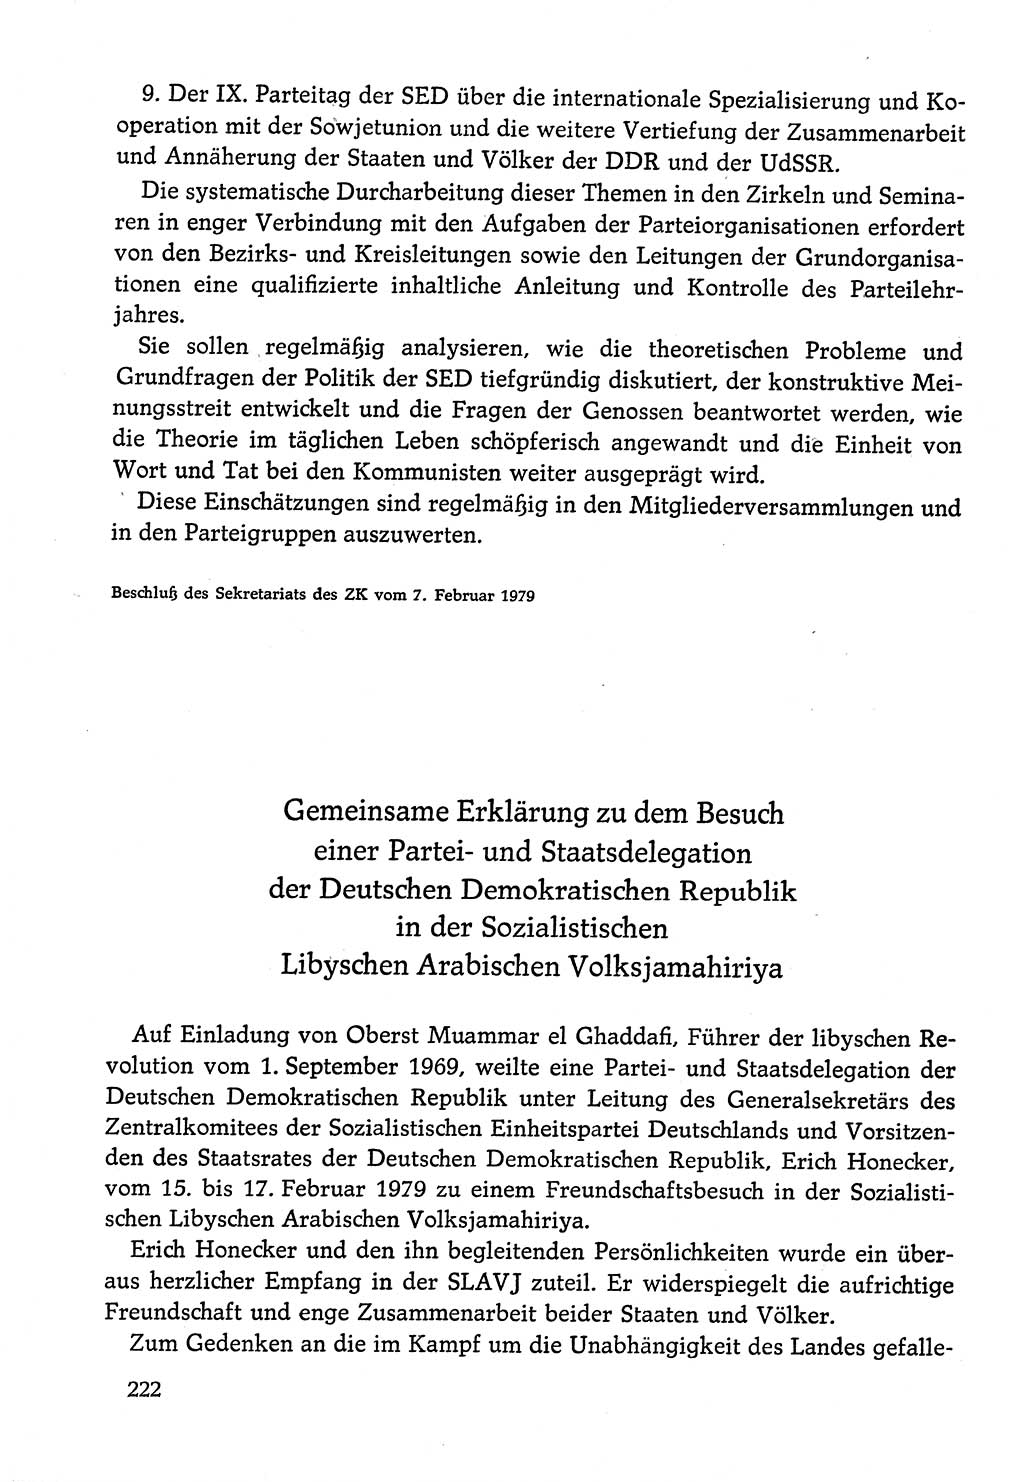 Dokumente der Sozialistischen Einheitspartei Deutschlands (SED) [Deutsche Demokratische Republik (DDR)] 1978-1979, Seite 222 (Dok. SED DDR 1978-1979, S. 222)